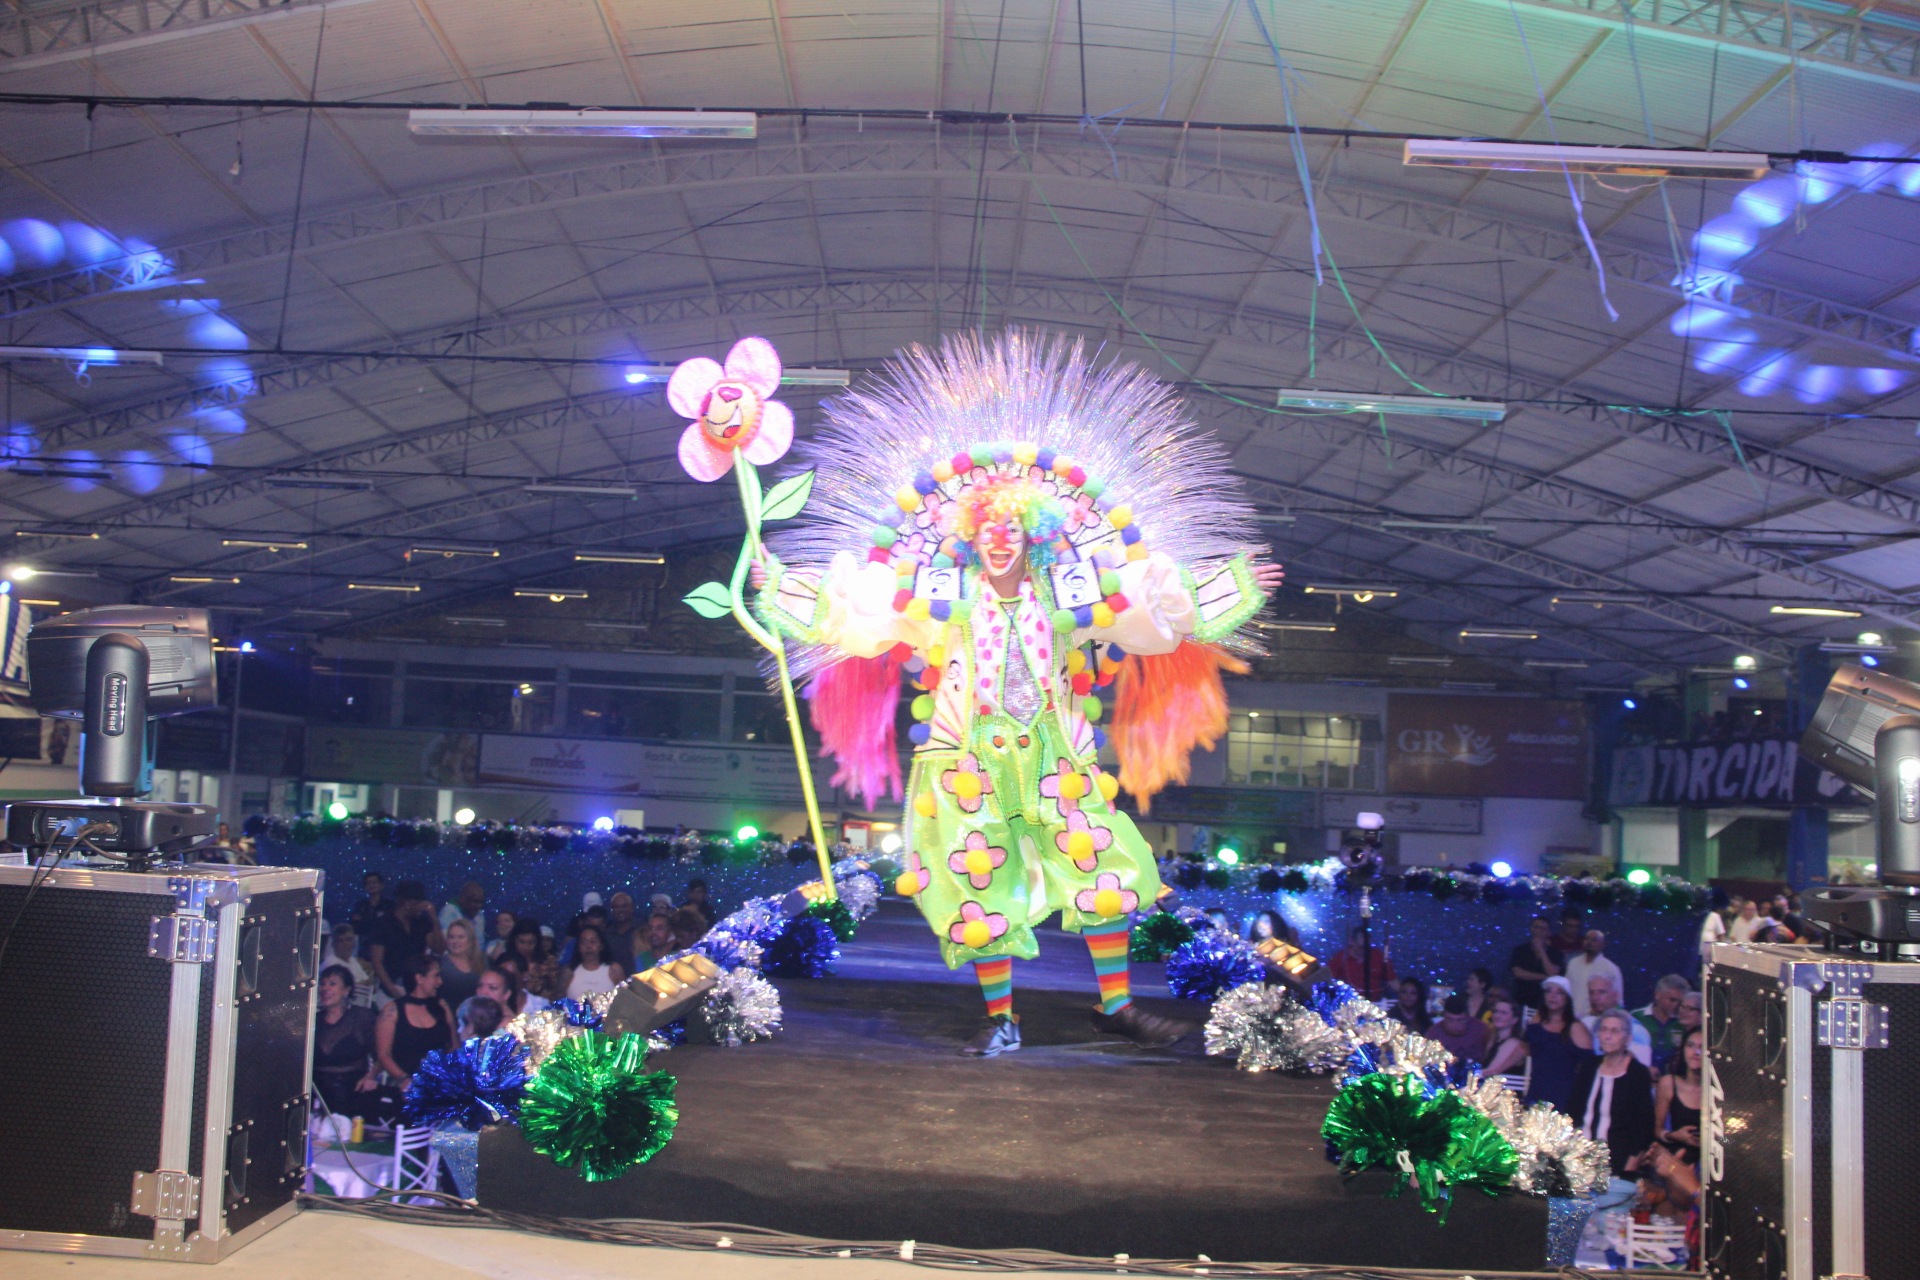 Fantasia da Vila Maria para o Carnaval 2023. Foto: Paulo Sadao e Ladislau/Facebook